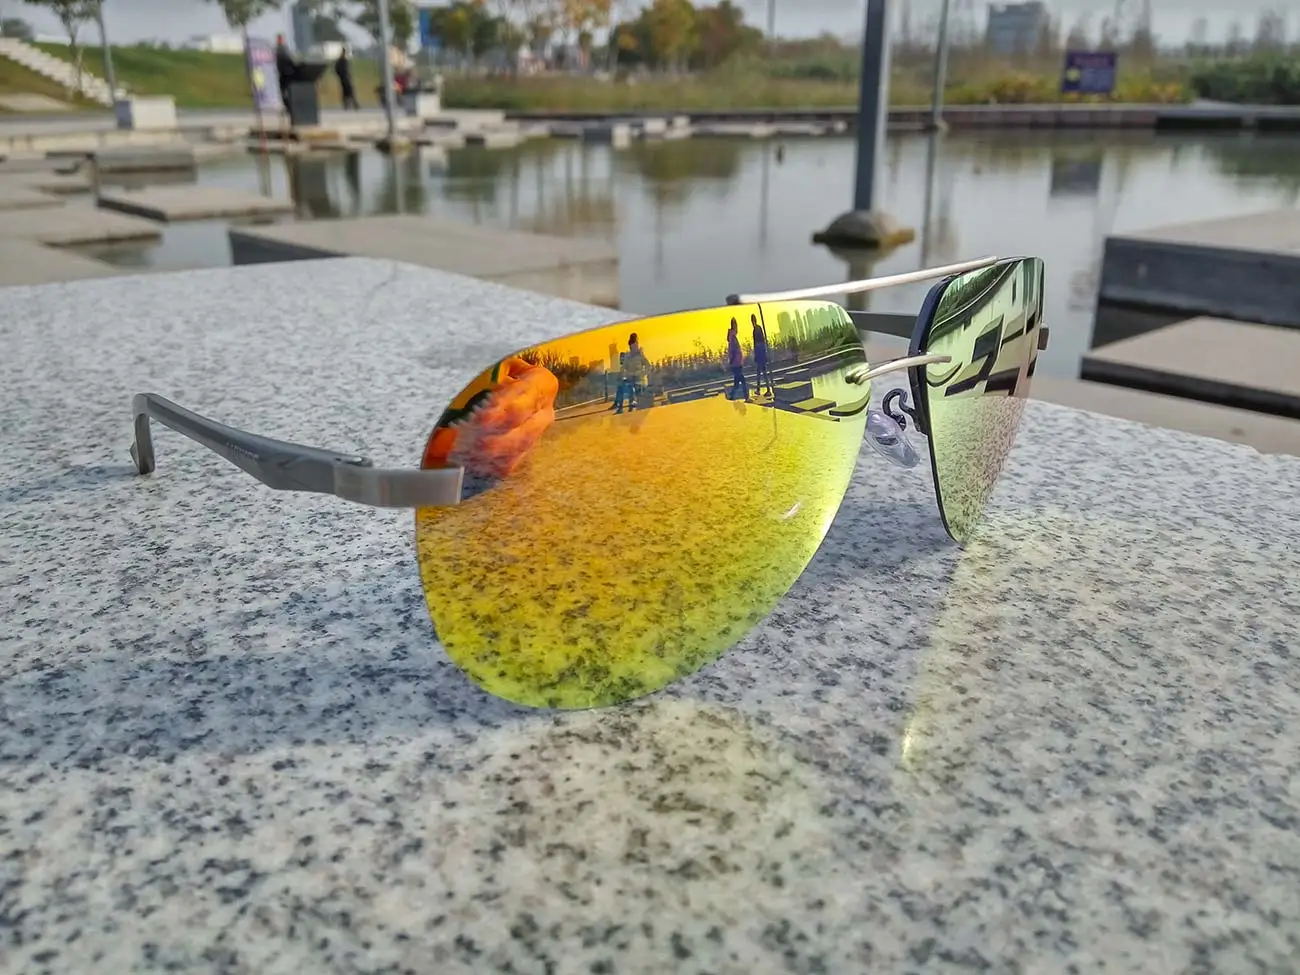 Классические модные брендовые поляризованные солнцезащитные очки мужские очки для вождения мужские солнцезащитные очки Gafas uv400